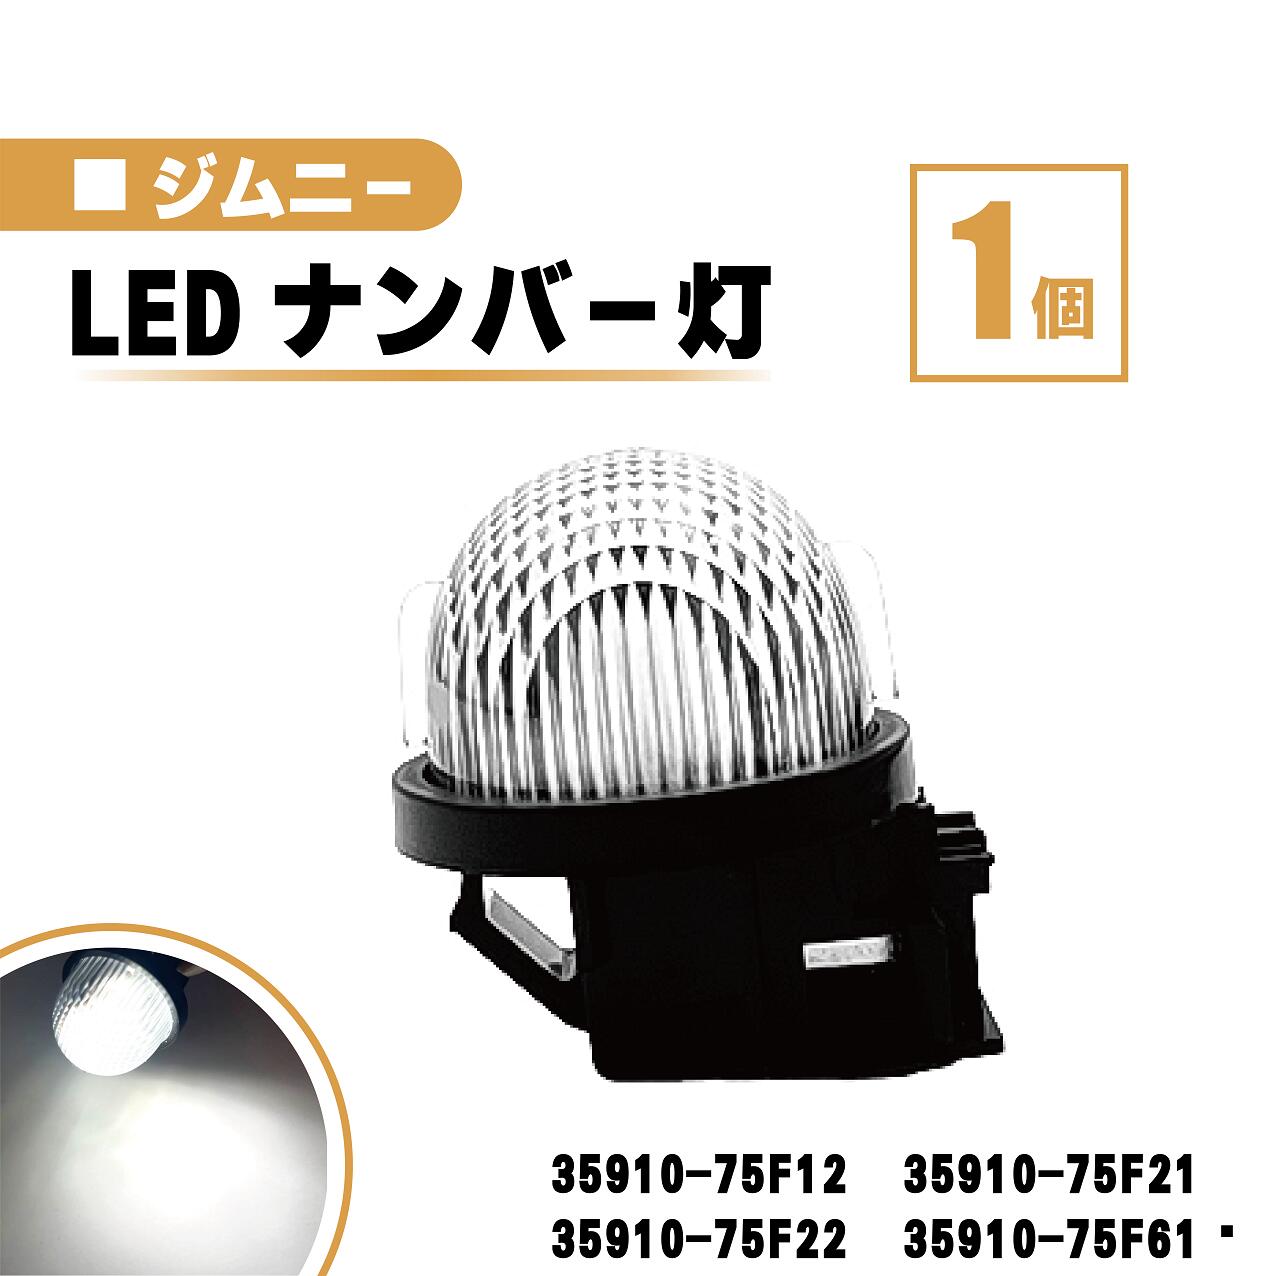 スズキ ジムニー LED ナンバー 灯 1個 レンズ 一体型 リア ライセンスプレート ランプ ライト 白 ホワイト 高輝度 JB23W JB64W 送料無料 35910-75F12 35910-75F21 35910-75F22 35910-75F61